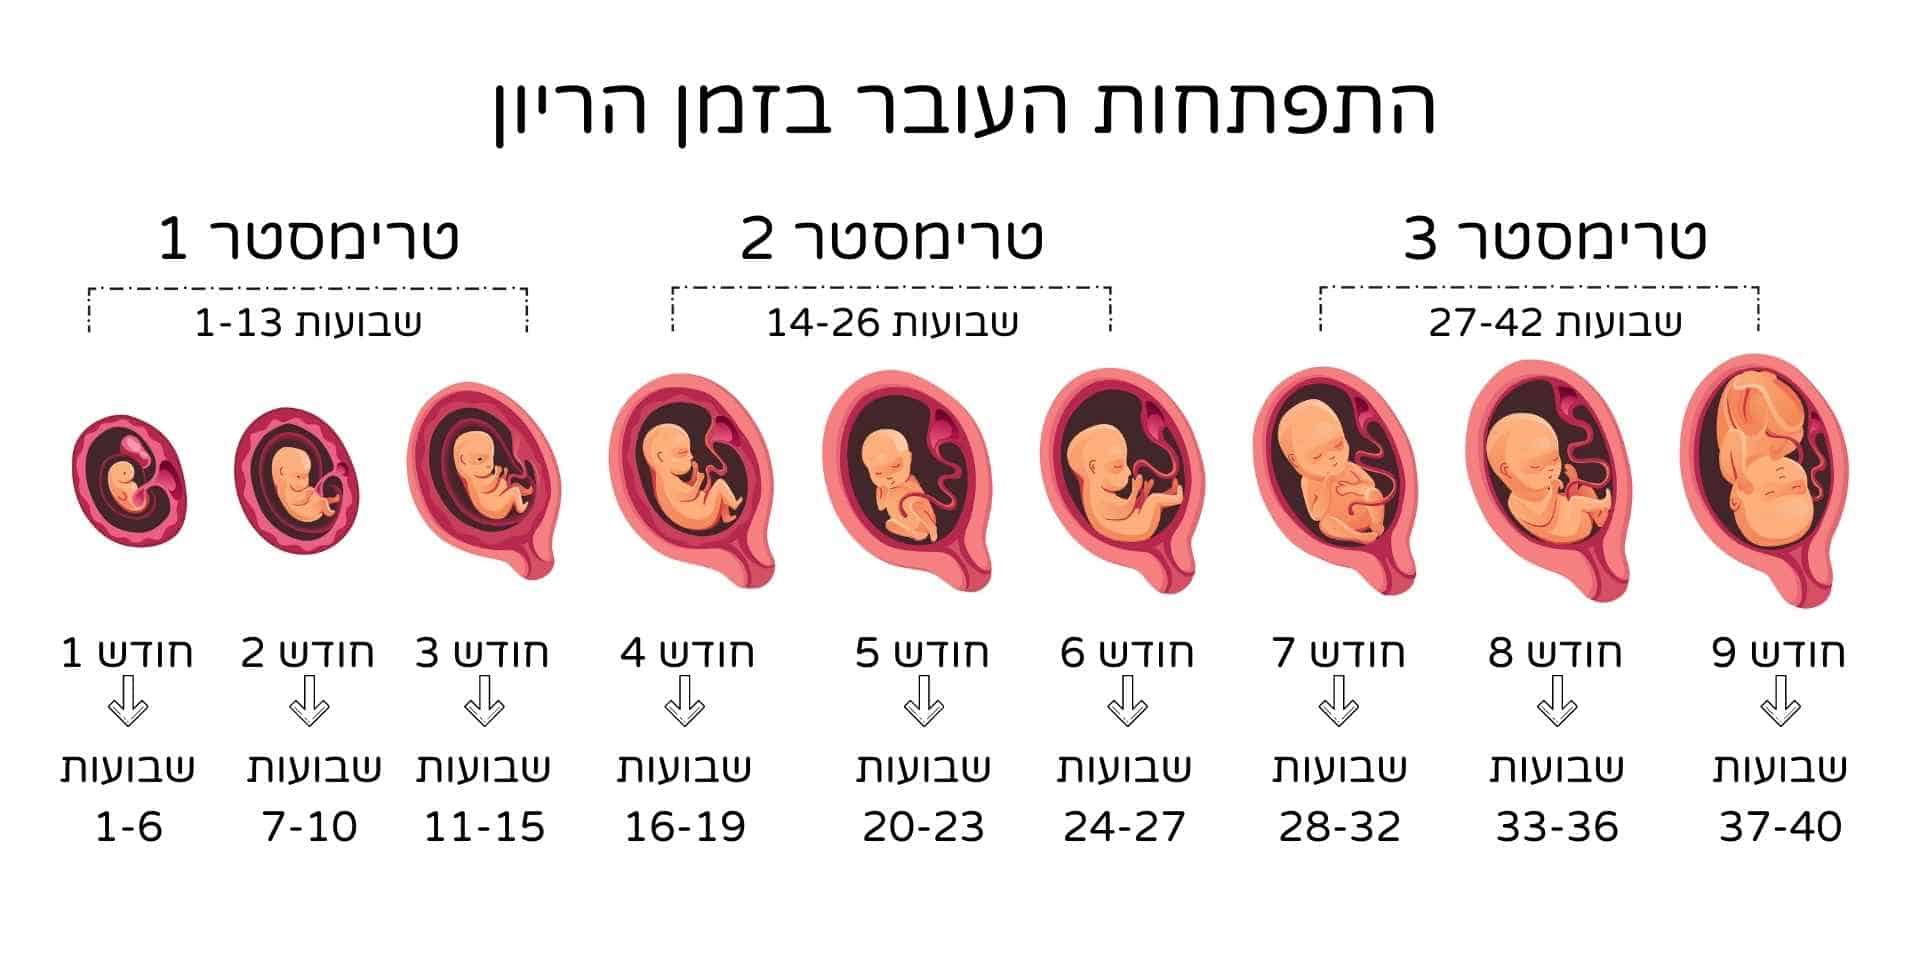 שבועות הריון התפתחות העובר